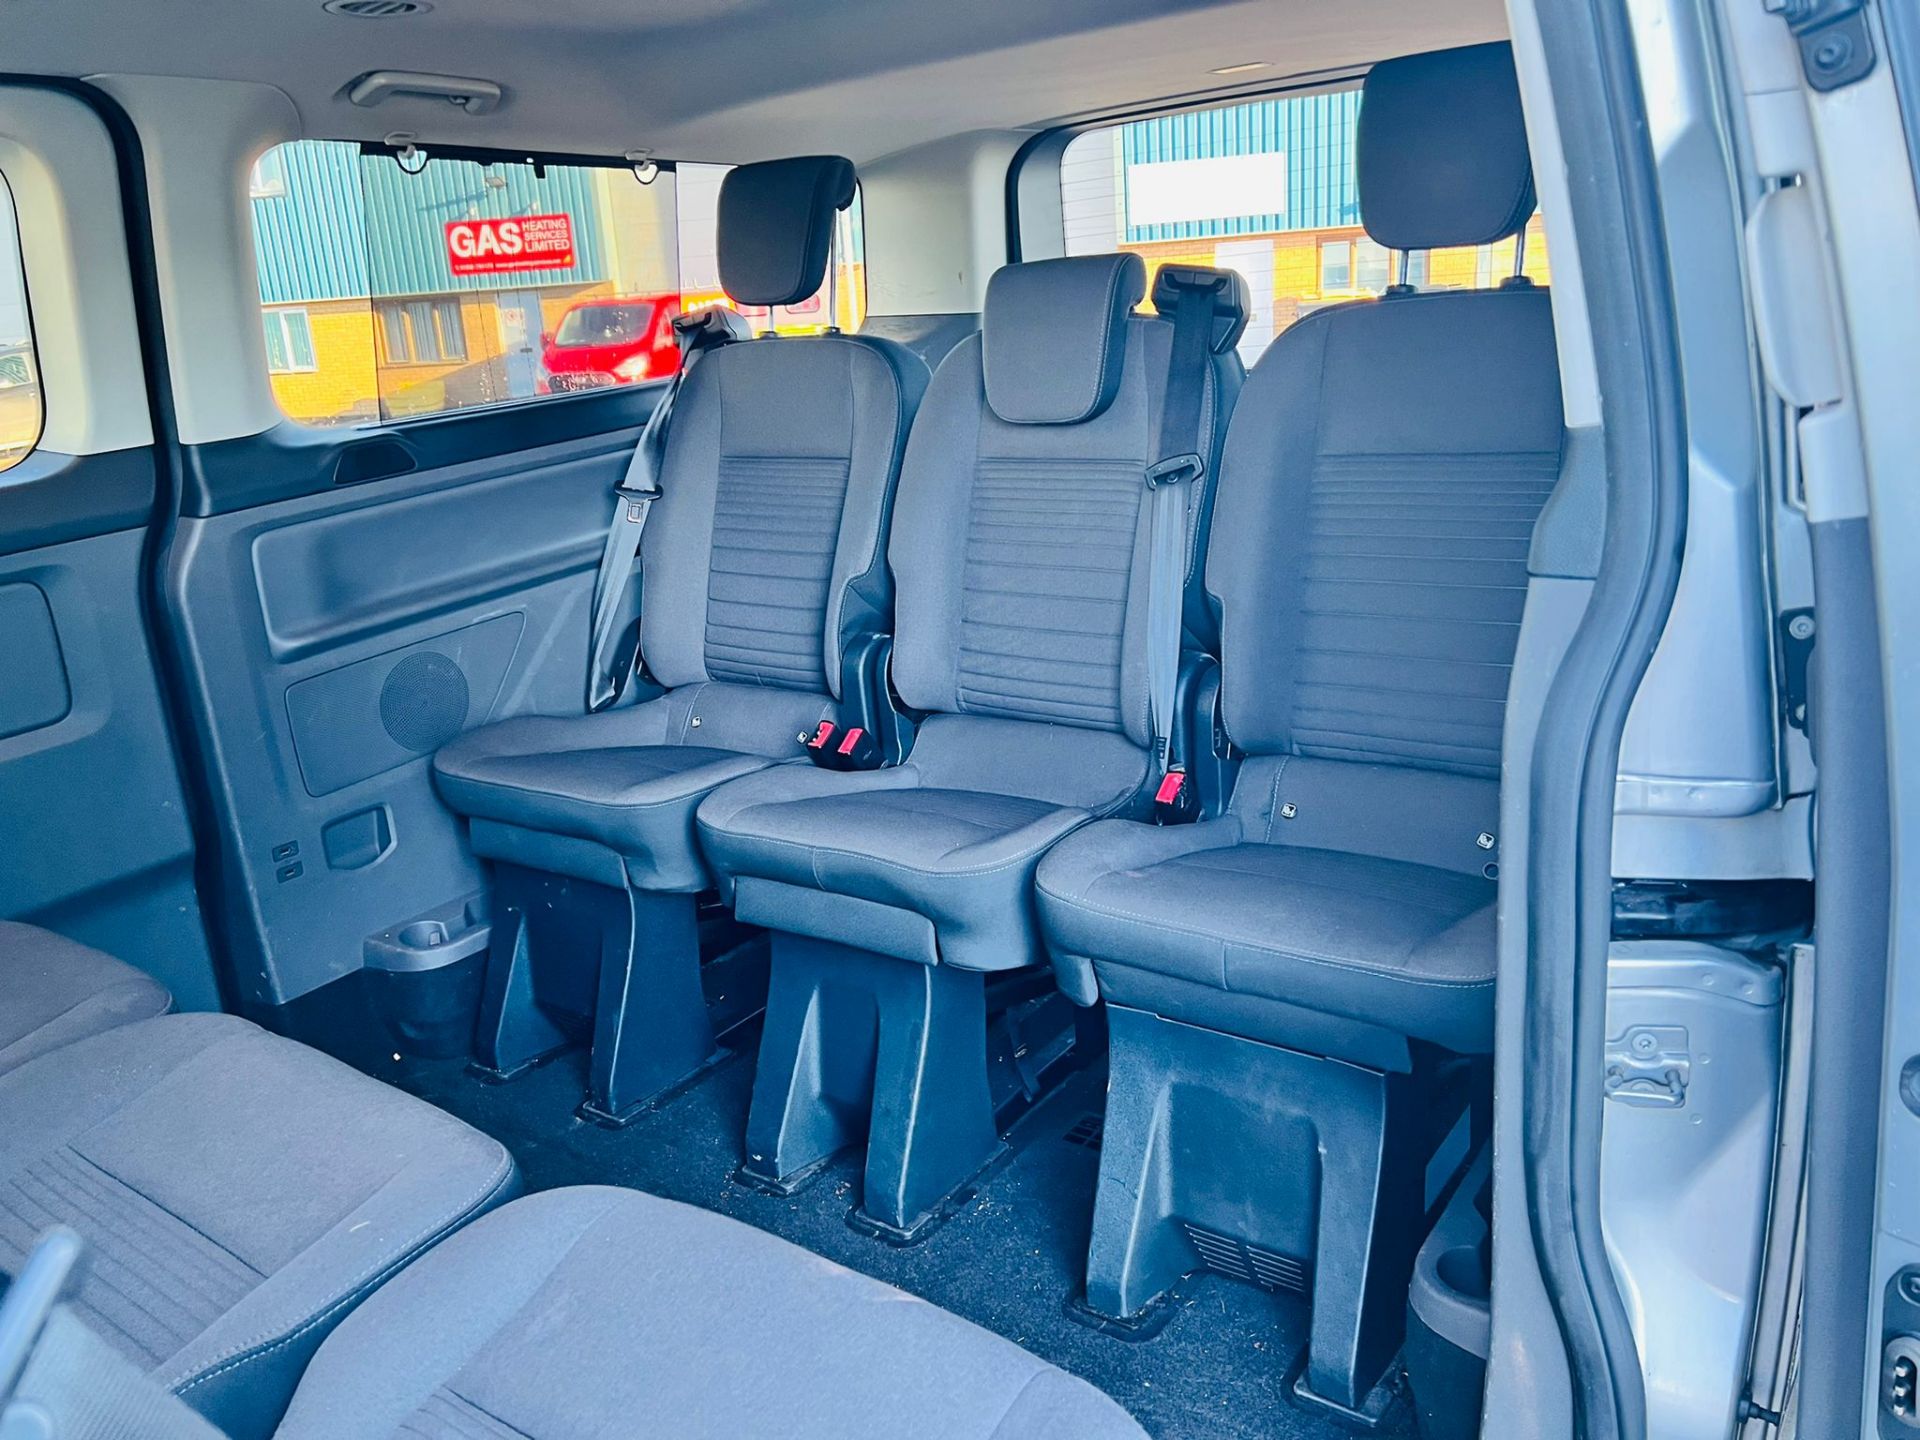 (Reserve Met) Ford Transit Custom 310 130 2.0 Tdci Titanium 9 Seater MiniBus 2019 Model - Air Con - - Image 15 of 36